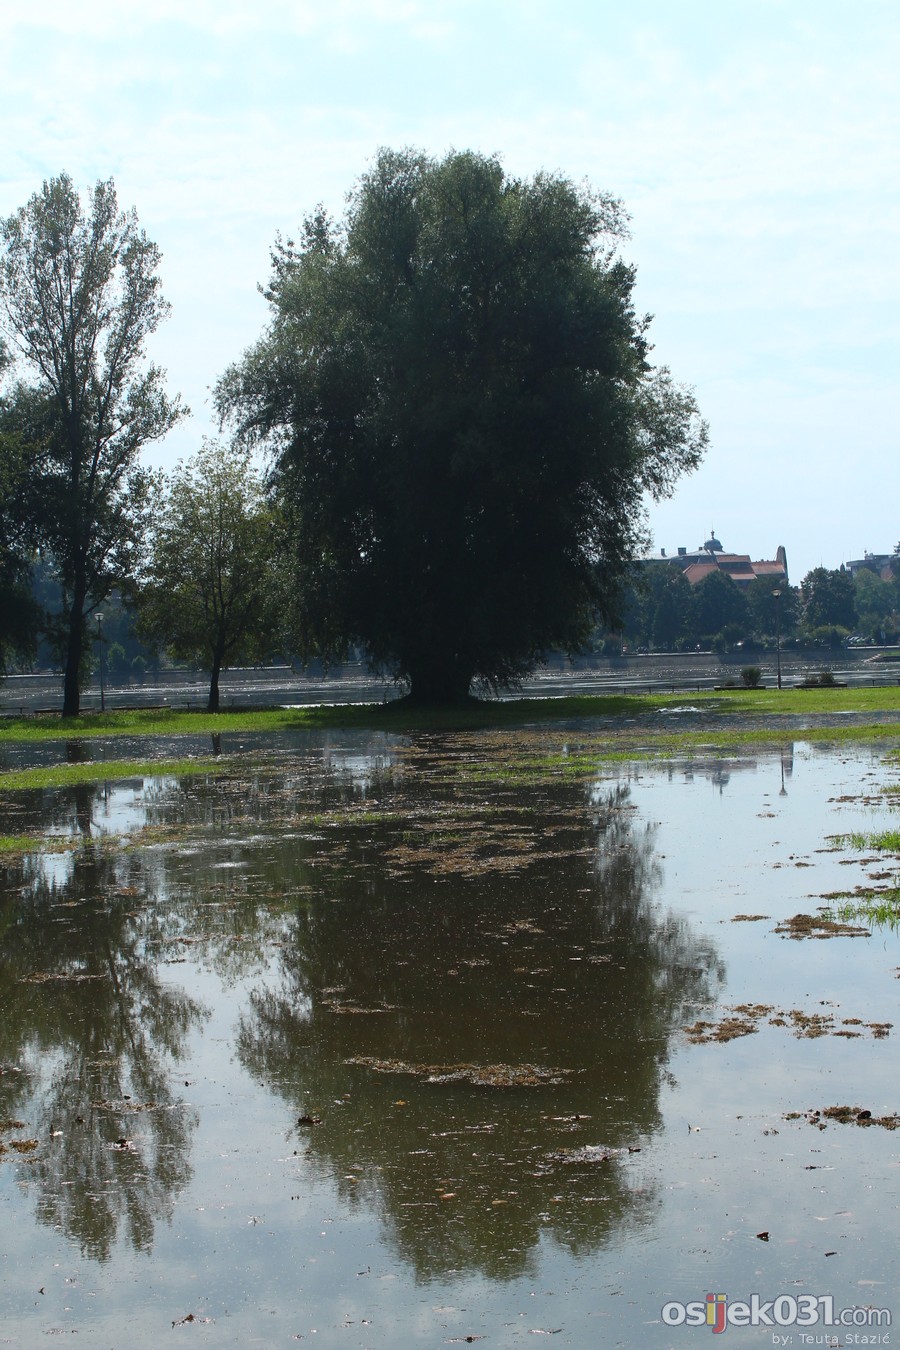 Drava se izlila [poplava, rujan 2014. #1]

Kljune rijei: drava poplava